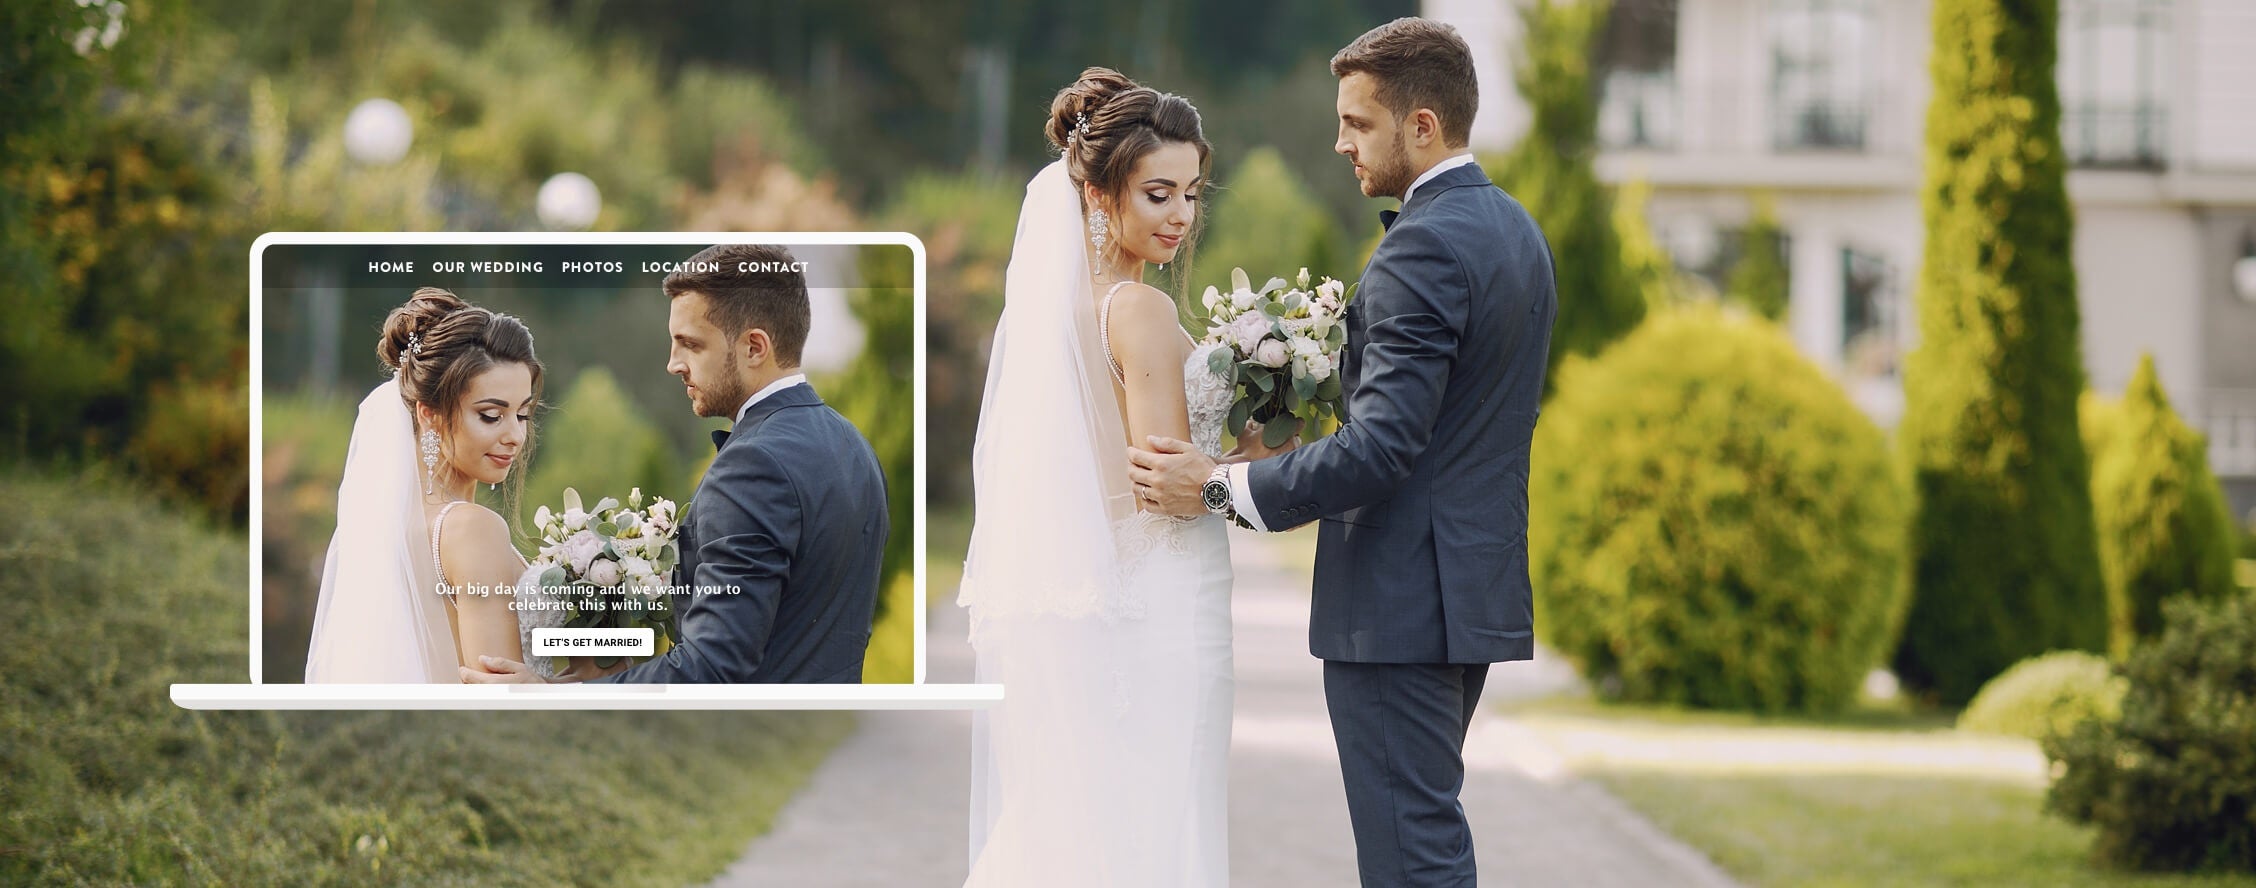 Uomo e donna in abito da sposi posano nel giorno del matrimonio, accanto a una foto del loro sito matrimonio.